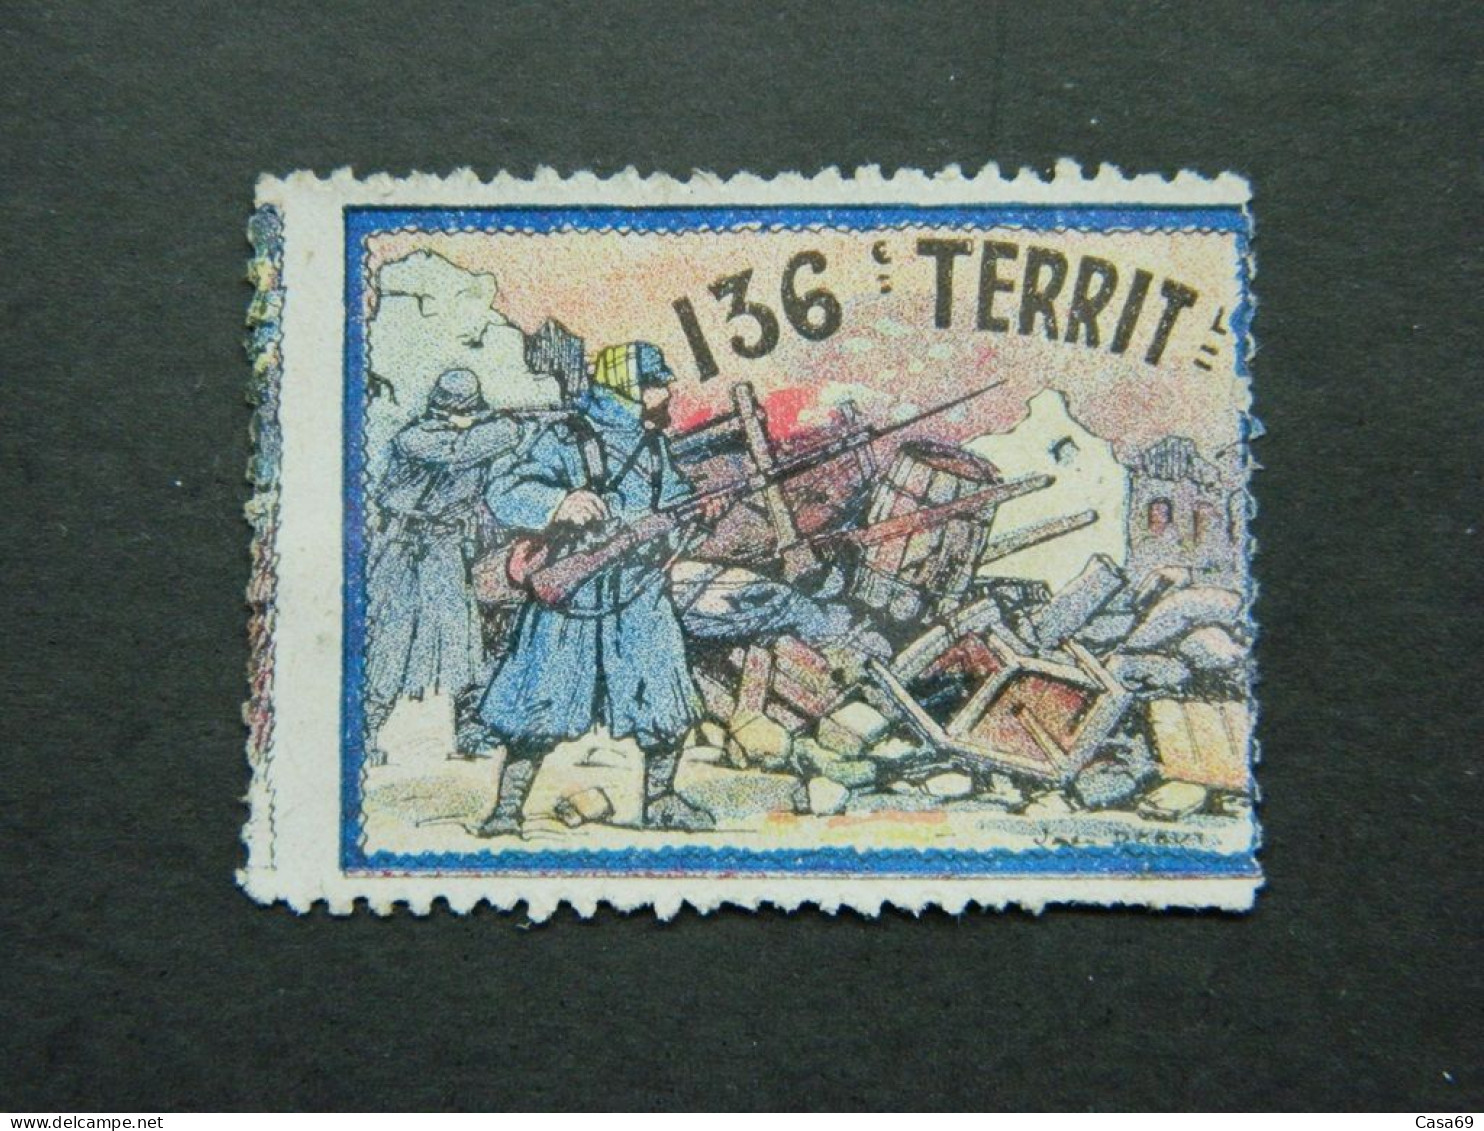 Vignette Militaire Delandre 136ème Bataillon Infanterie Territoriale - Military Heritage